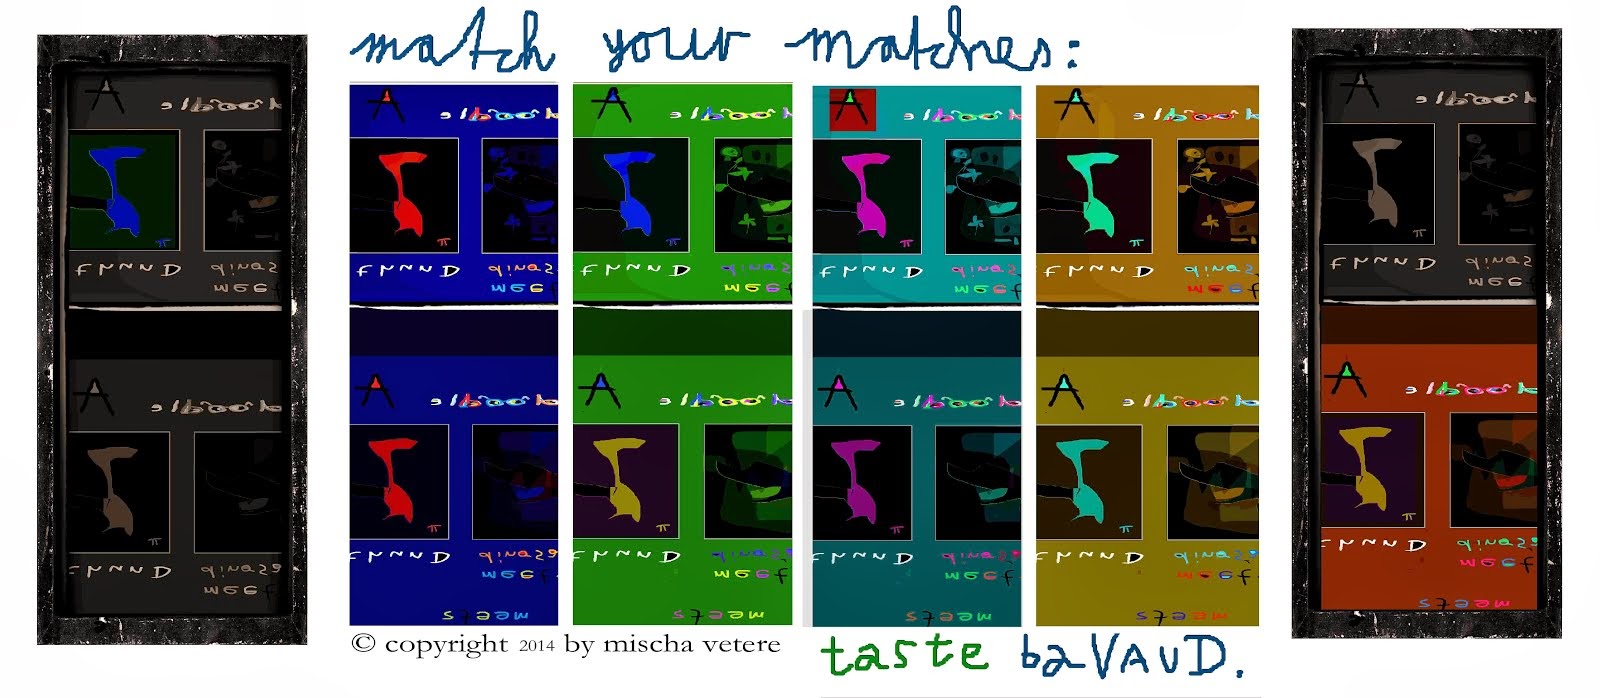 match the matcfhes - ceativity - ART - mischa vetee - bavaud maurice - max frisch fälschung